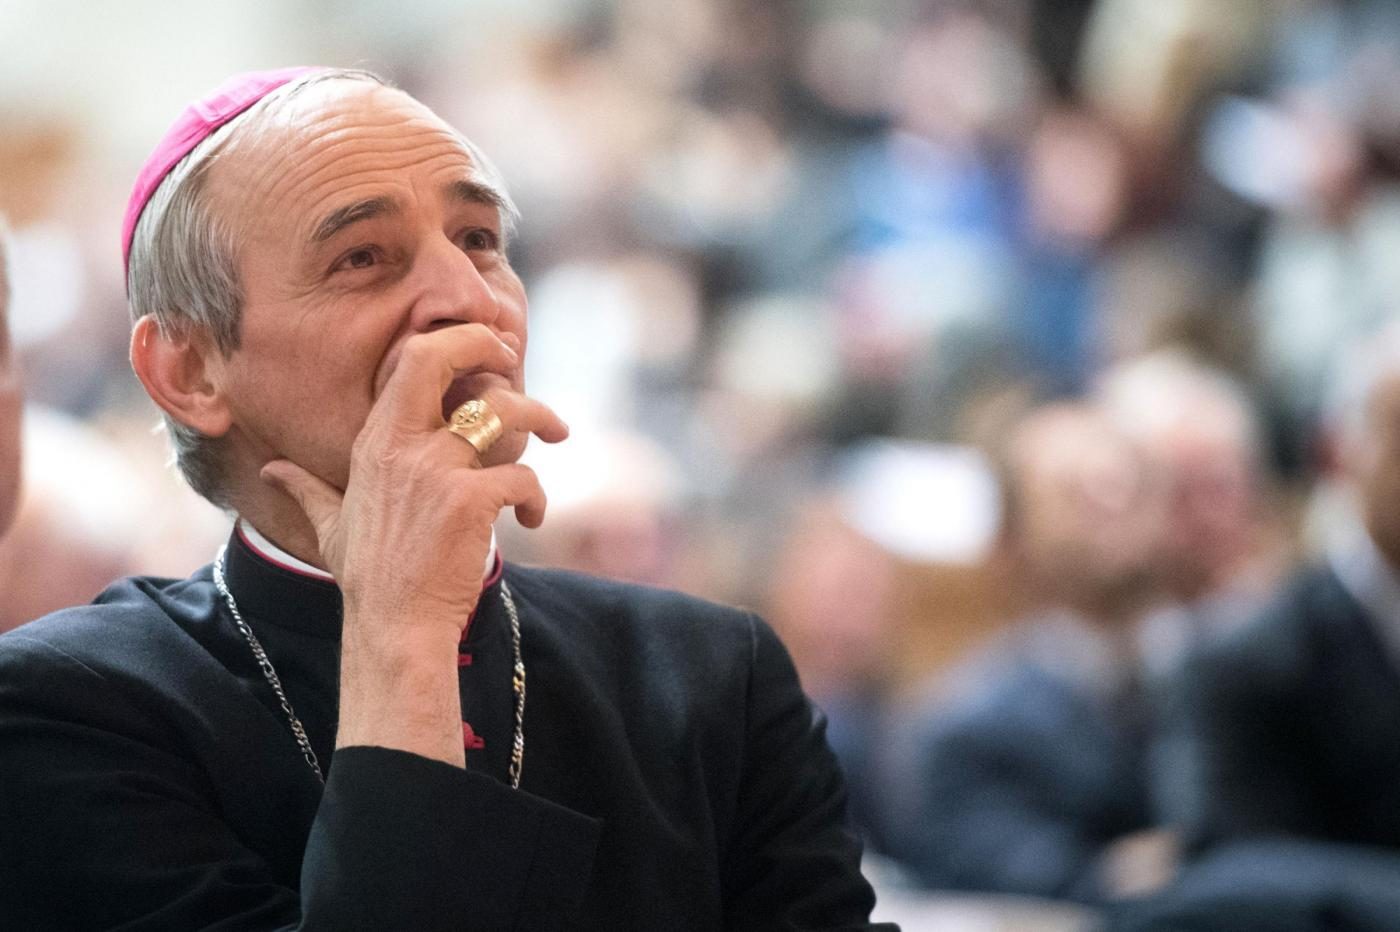 Il cardinale Zuppi: "La politica e la società devono riconoscere il prestigio della maternità"